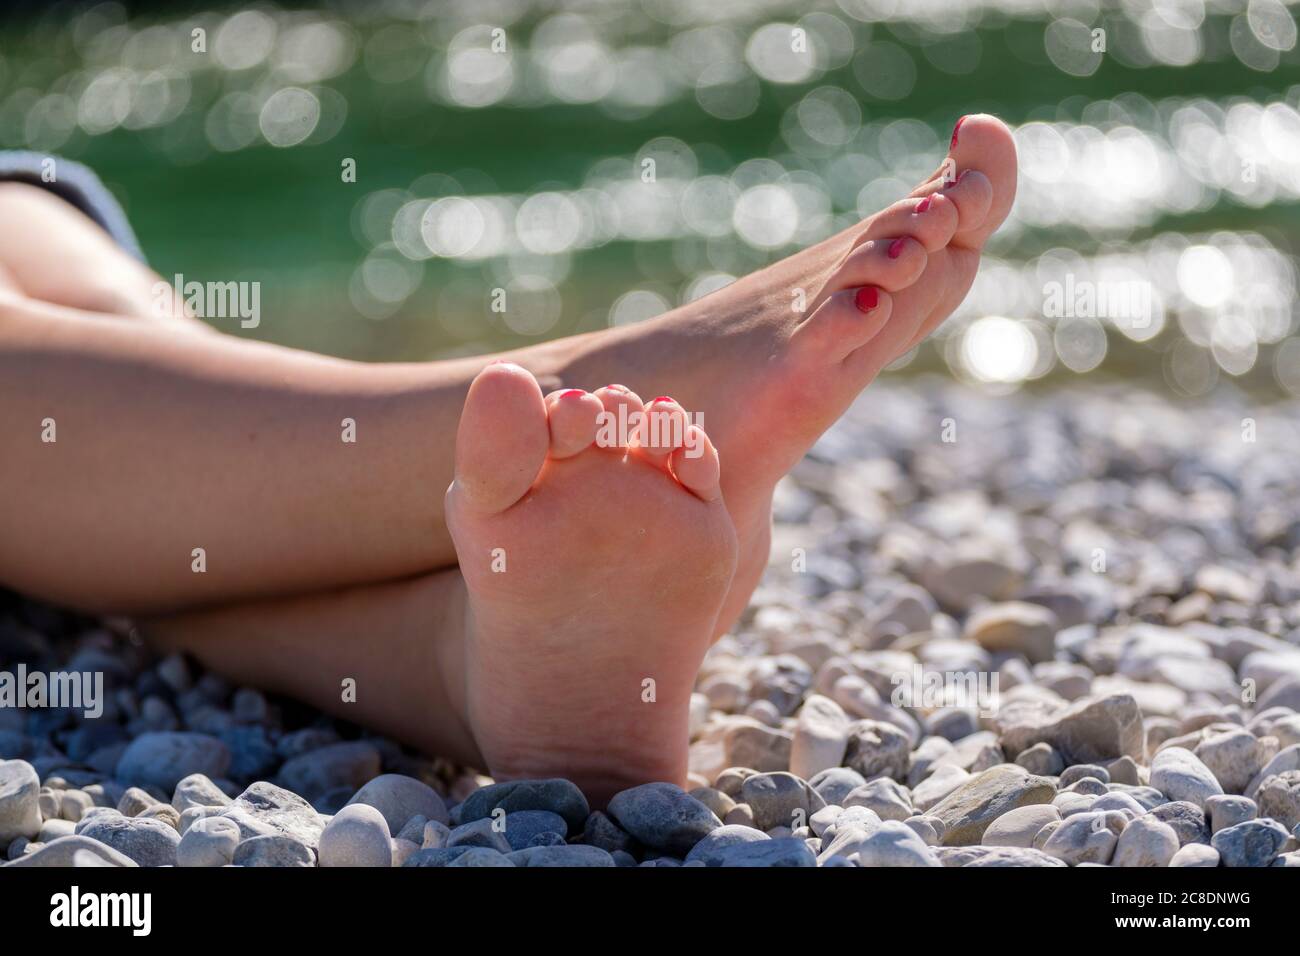 Jeune femme pieds nus assise sur des galets au bord de la rivière Banque D'Images